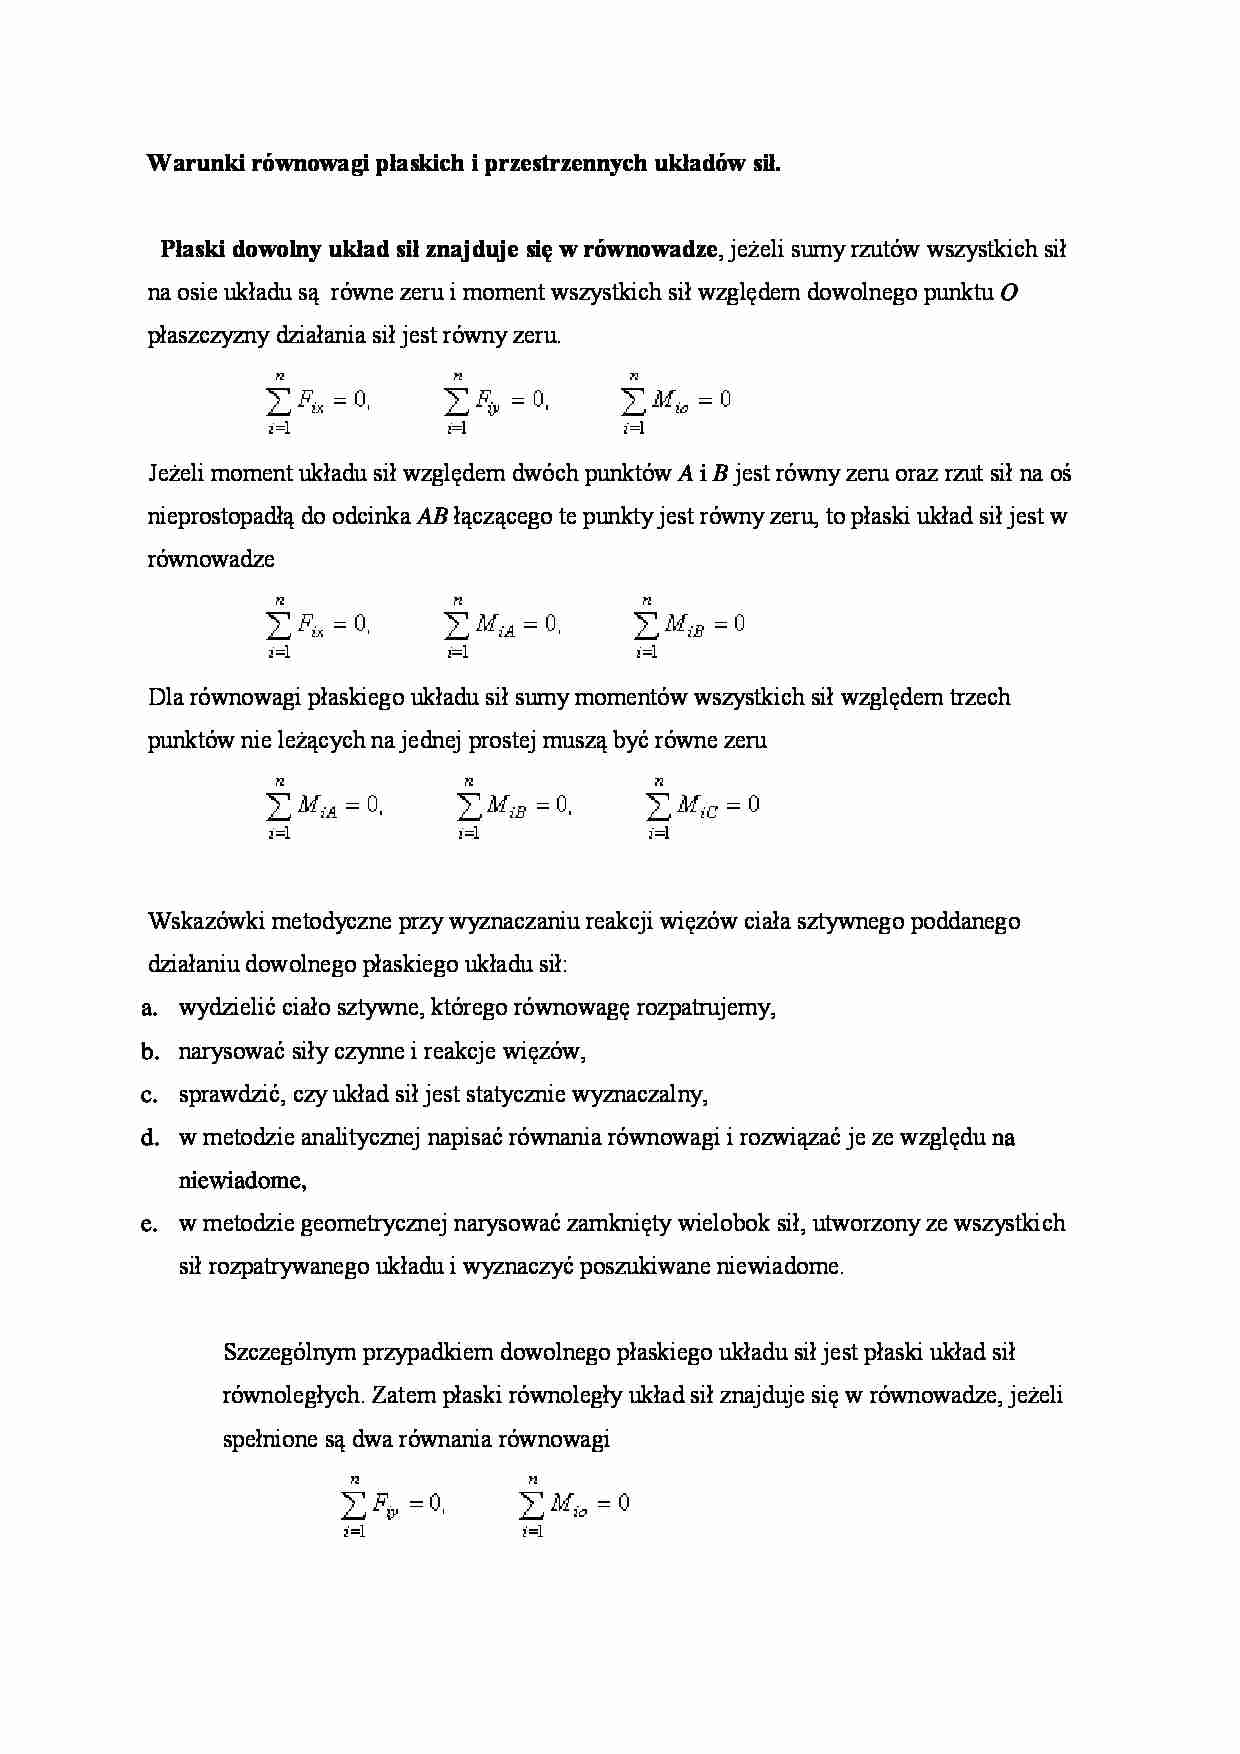 Warunki równowagi płaskich i przestrzennych układów sił - strona 1